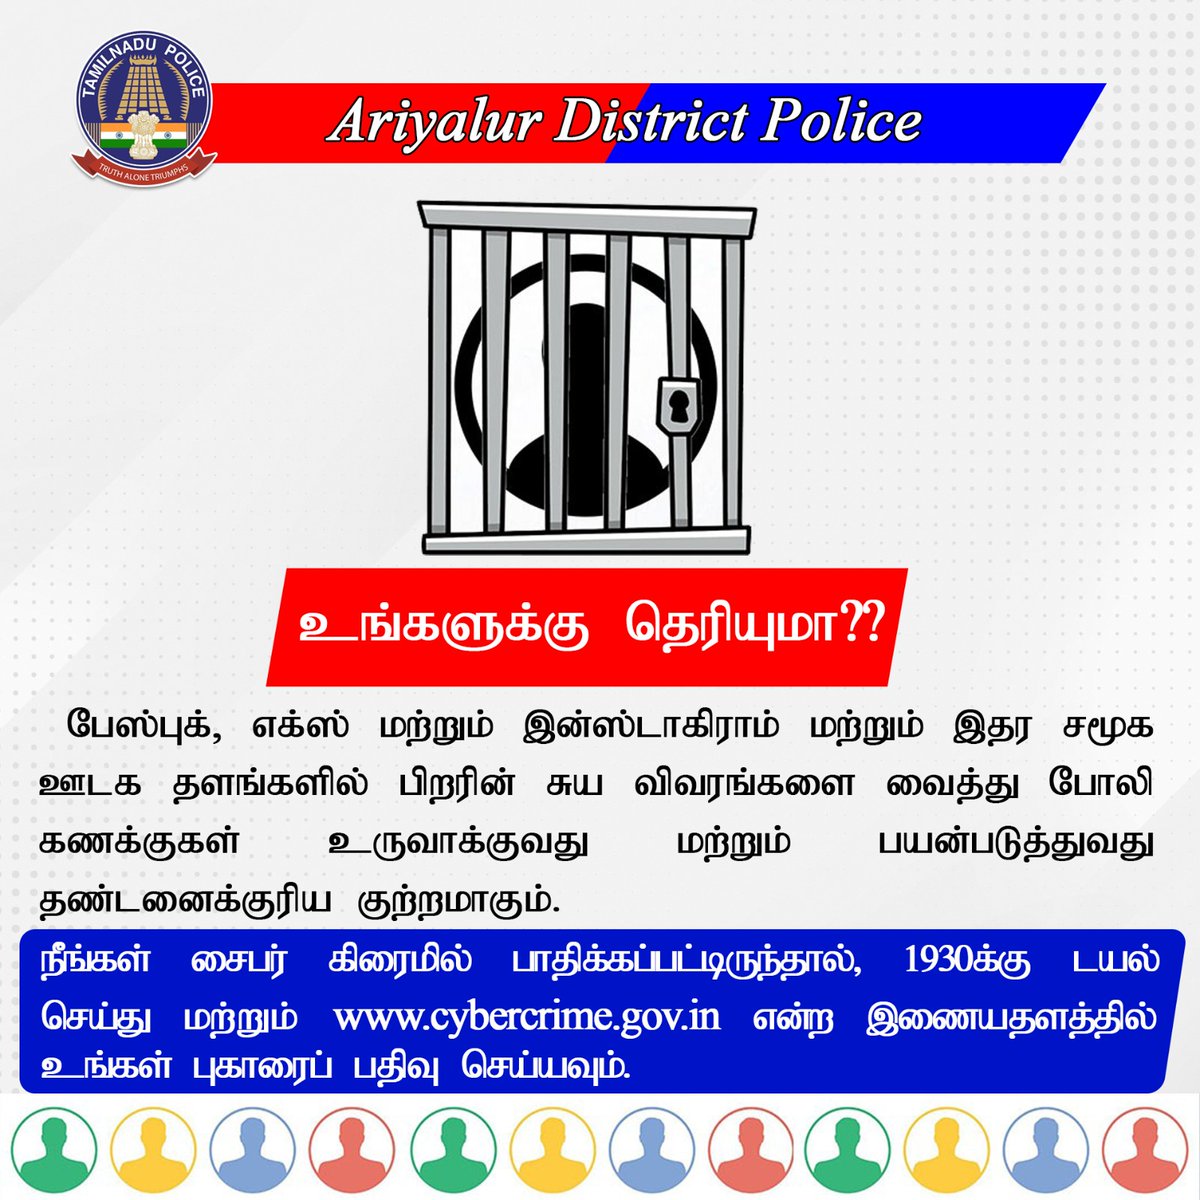 #AriyalurDistrictPolice #safeariyalur 
#SPariyalur #ariyalurdistrict #call1930 
#cyberawareness #Cybersecurity #czpolice 
#TNPolice